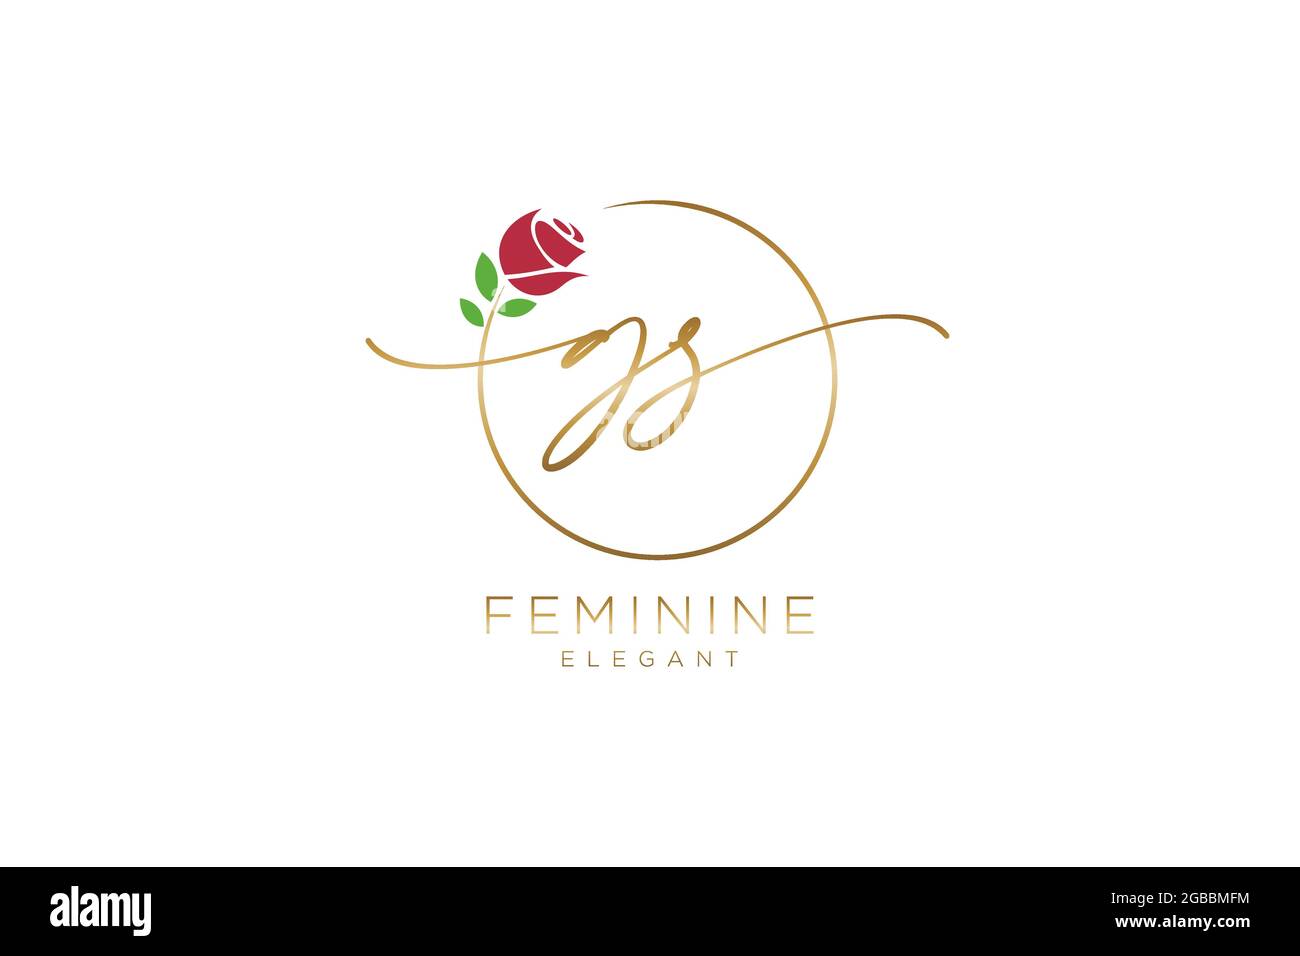 Monogramma di bellezza con logo GS Femminile ed elegante design con logo, logo scritto a mano della firma iniziale, matrimonio, moda, floreale e botanico con creatività Illustrazione Vettoriale